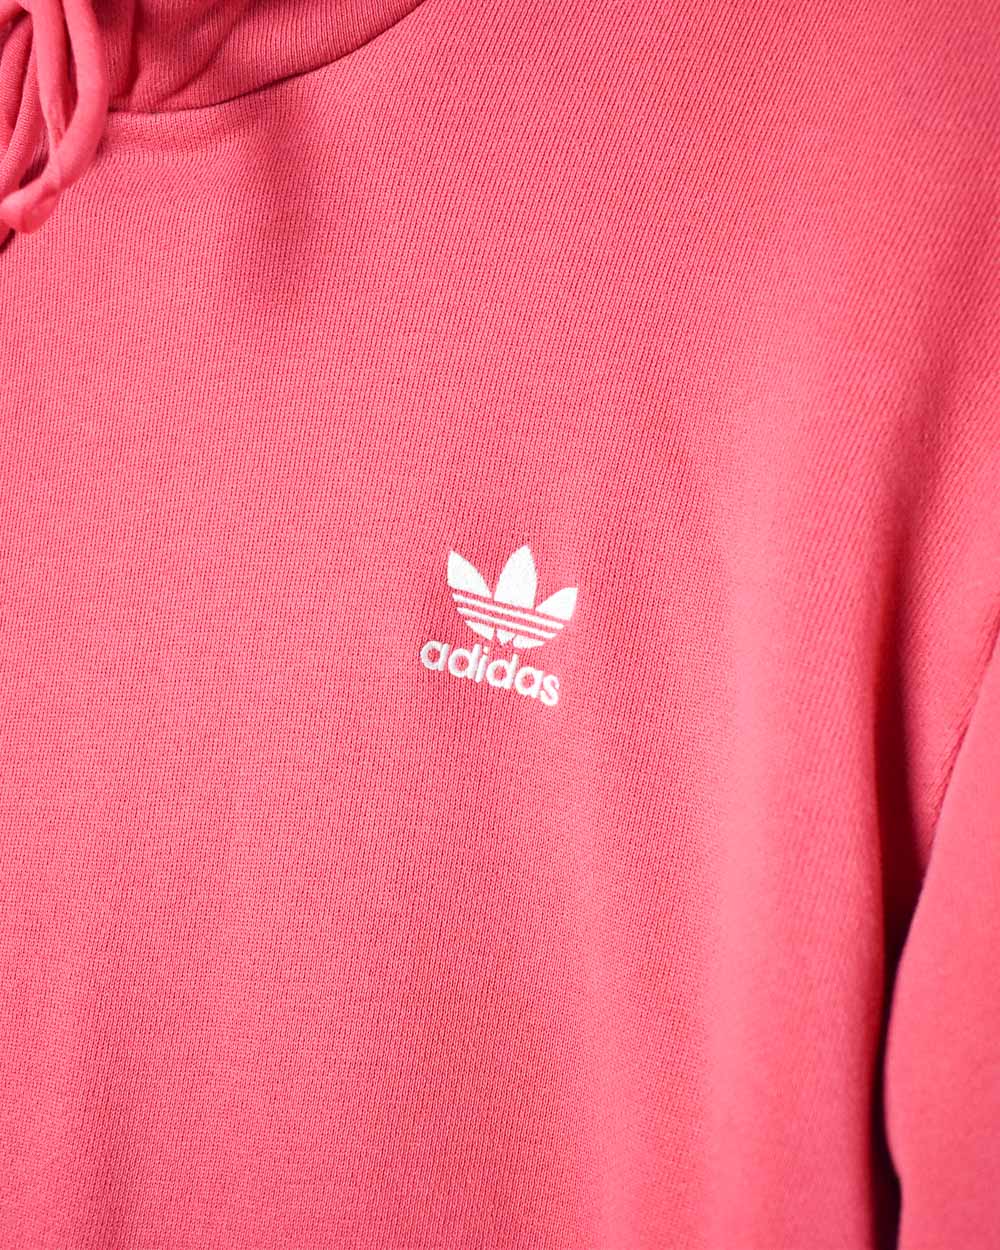 Pink Adidas Hoodie - Large